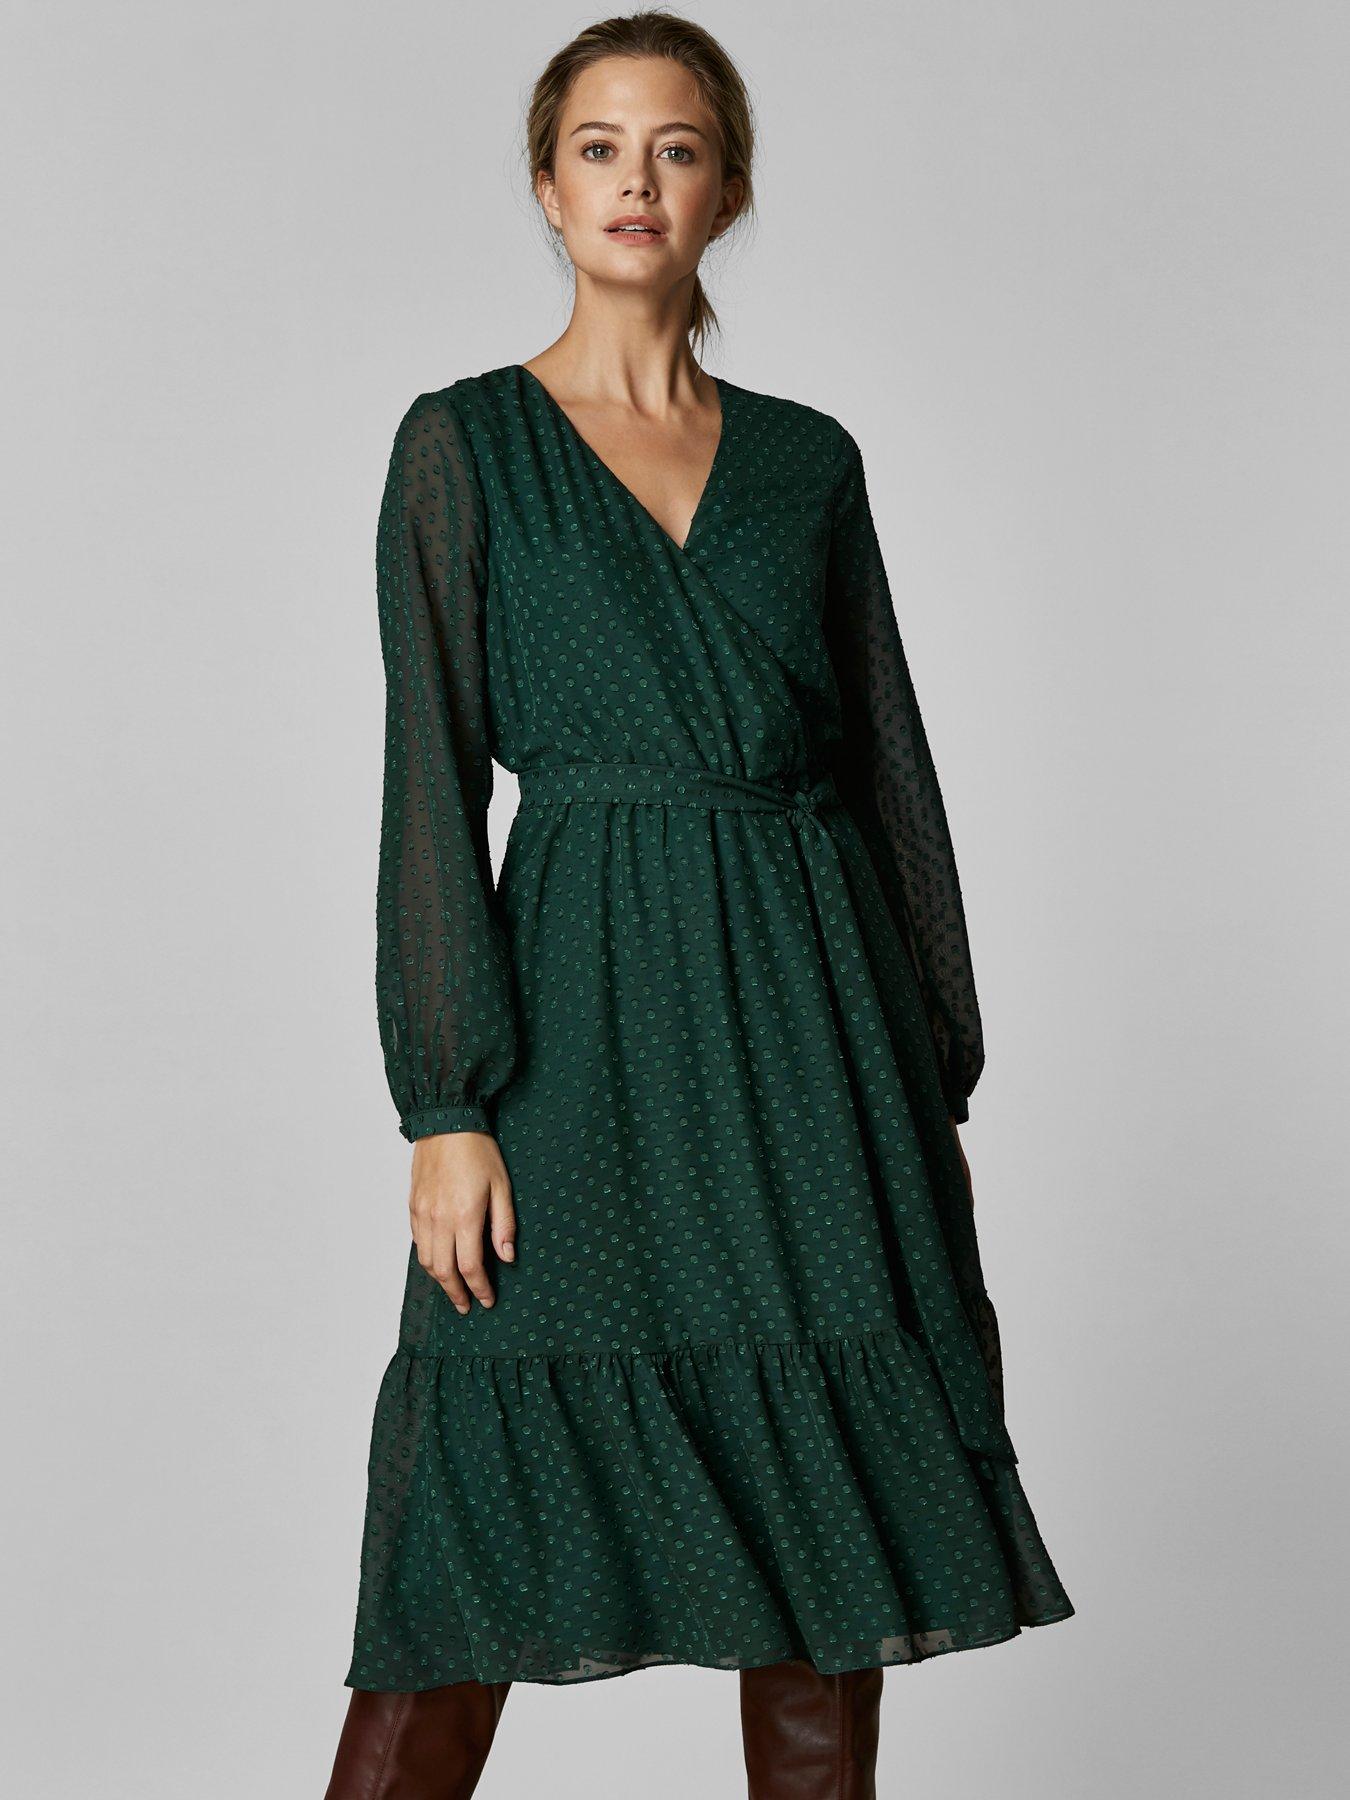 wallis green dress